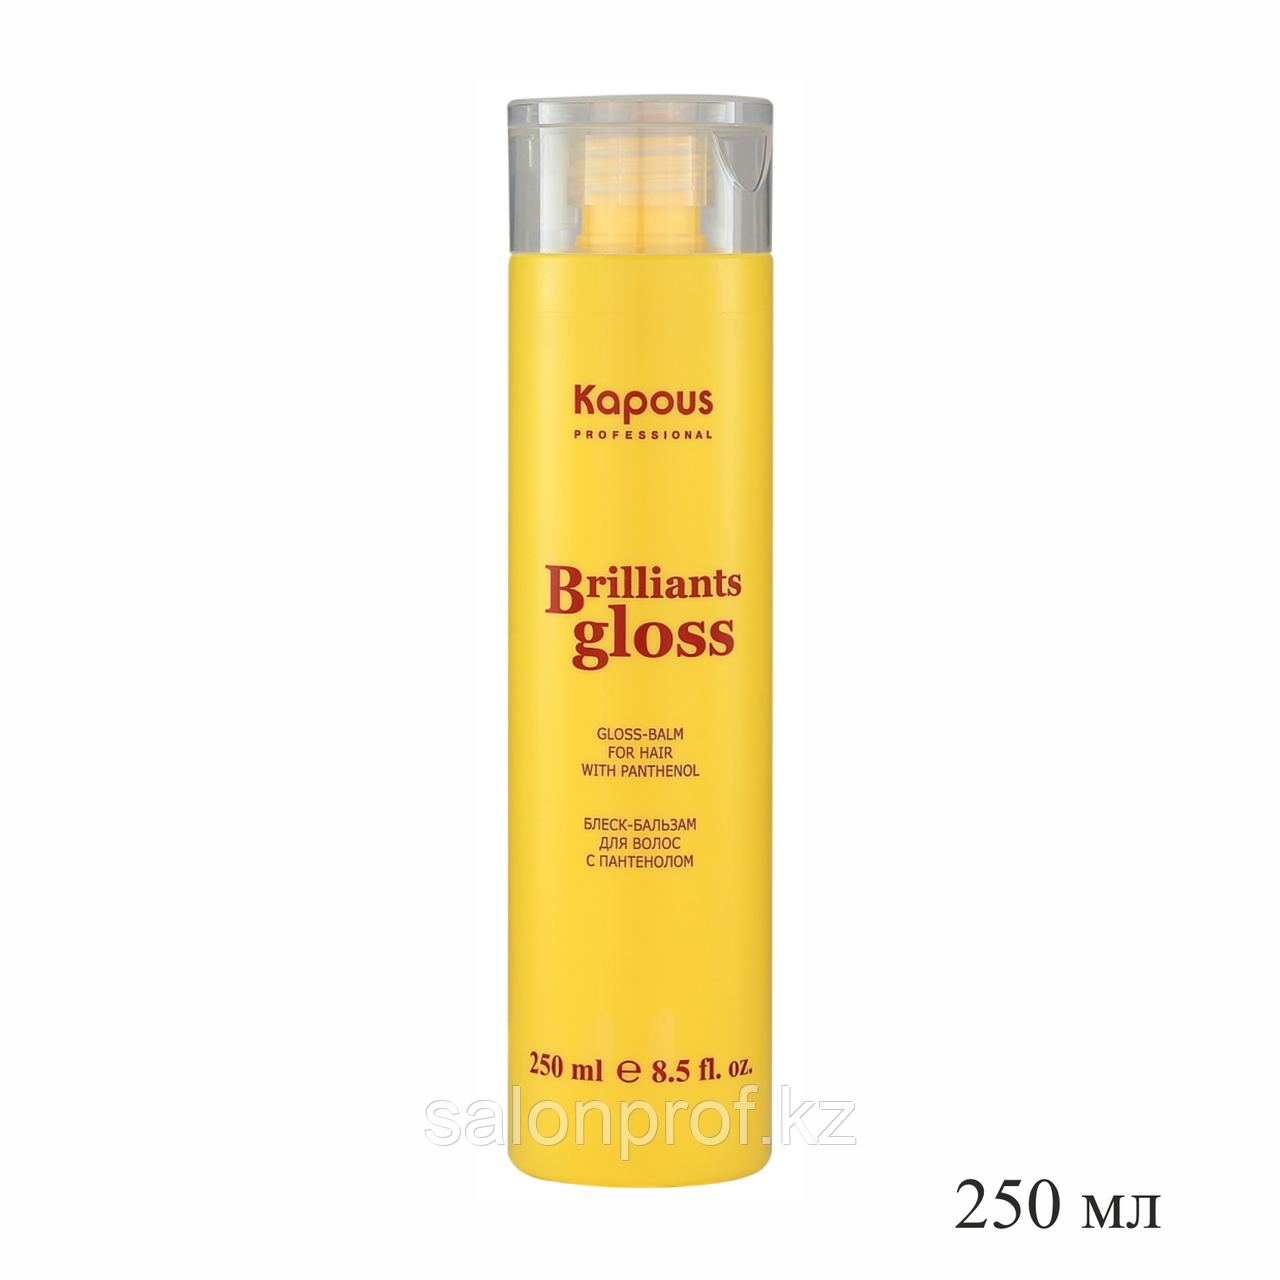 Бальзам-блеск для волос c пантенолом Brilliants gloss KAPOUS 250 мл №59787